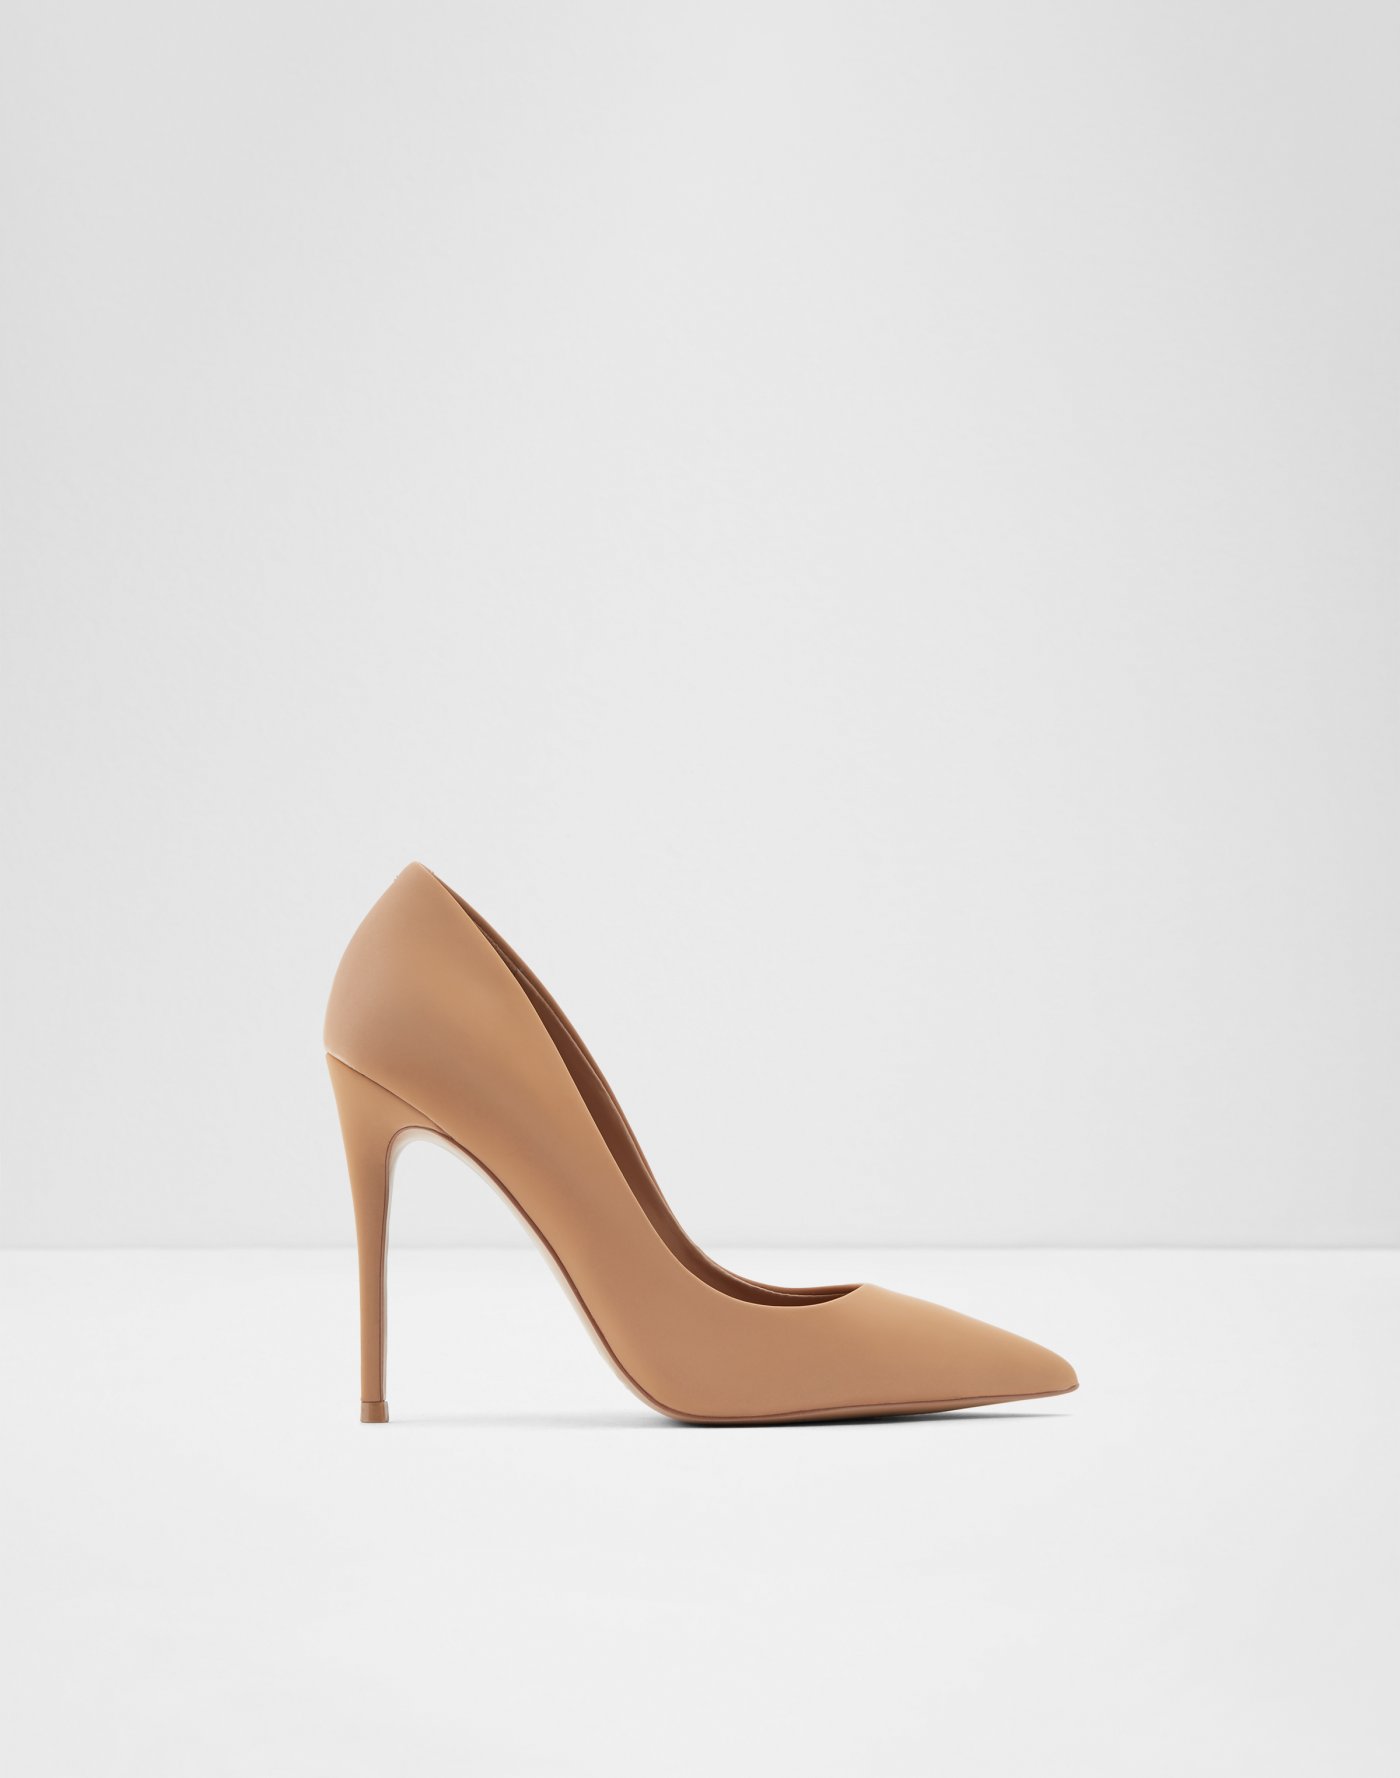 Heels For Women | Stilettos \u0026 High 